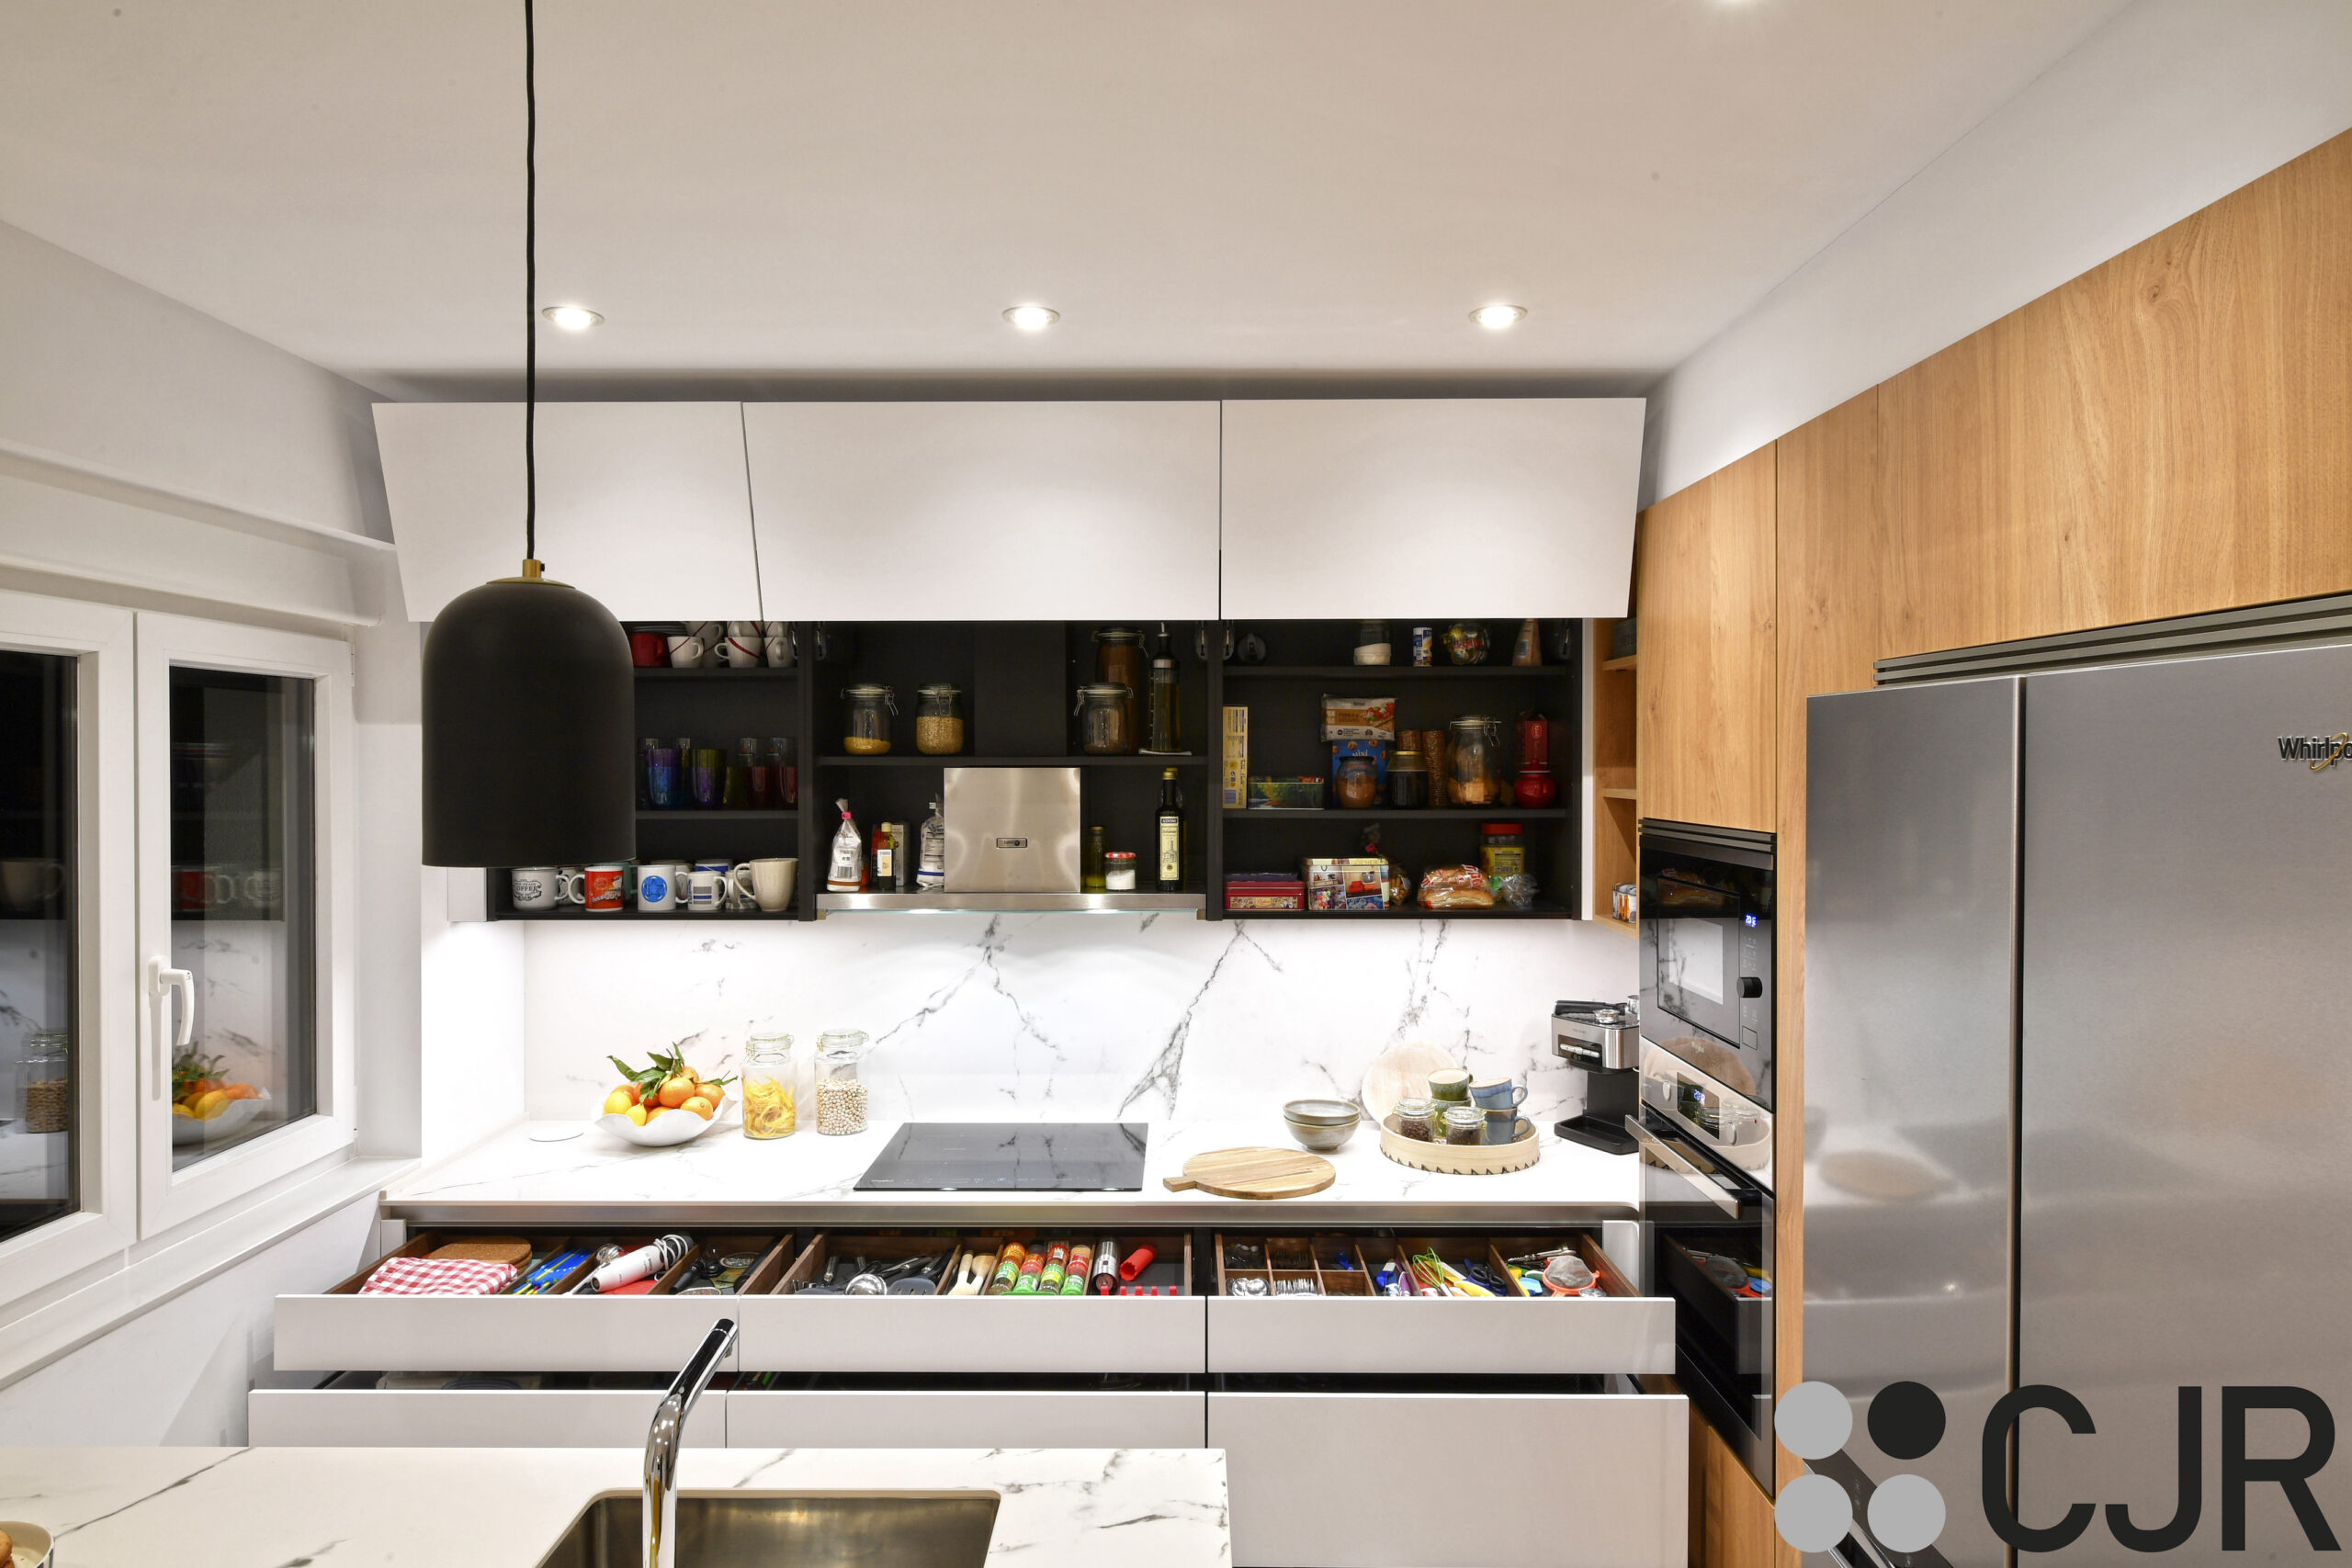 muebles altos de cocina en blanco con el interior en negro cocinas cjr